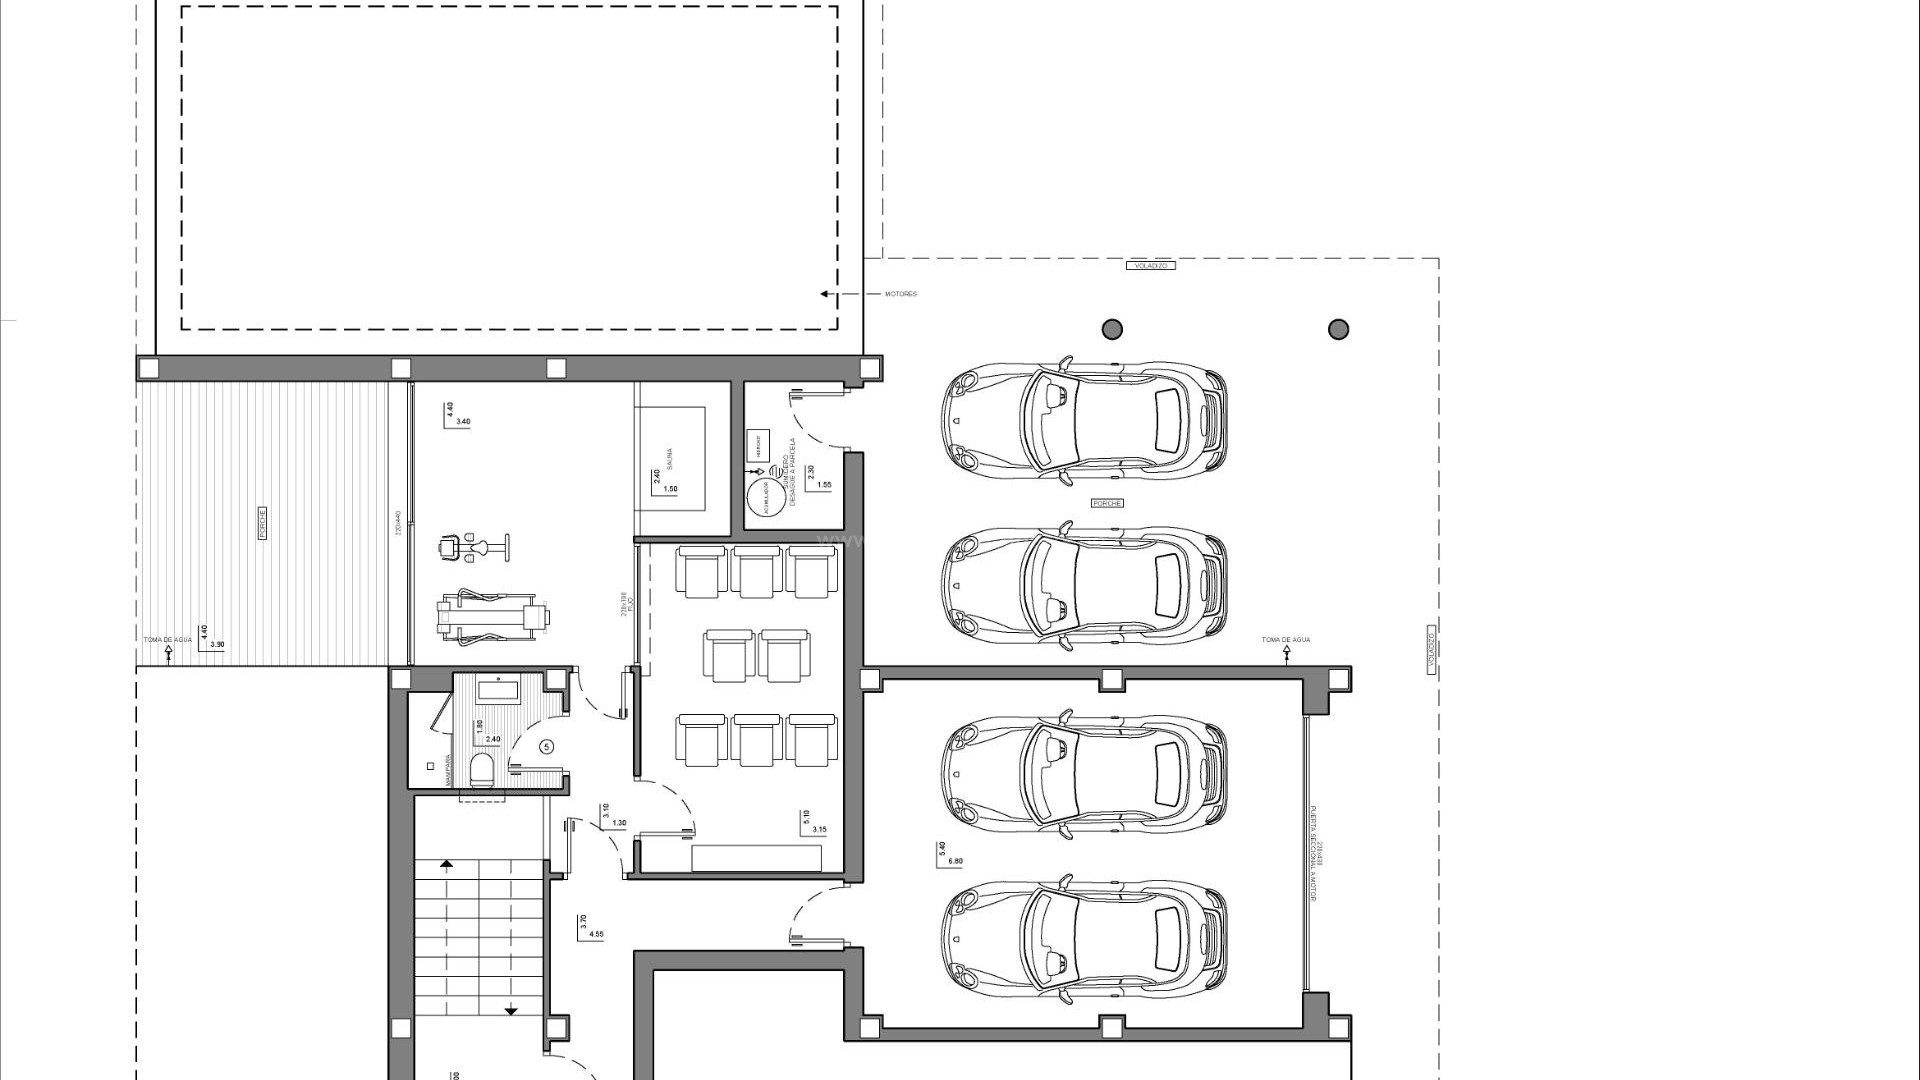 Moderne nybygget luksusvilla i Benitachell, 3 soverom, 5 bad, parkering for 4 biler, stort evighetsbasseng,1300 kvadratmeter stor tomt